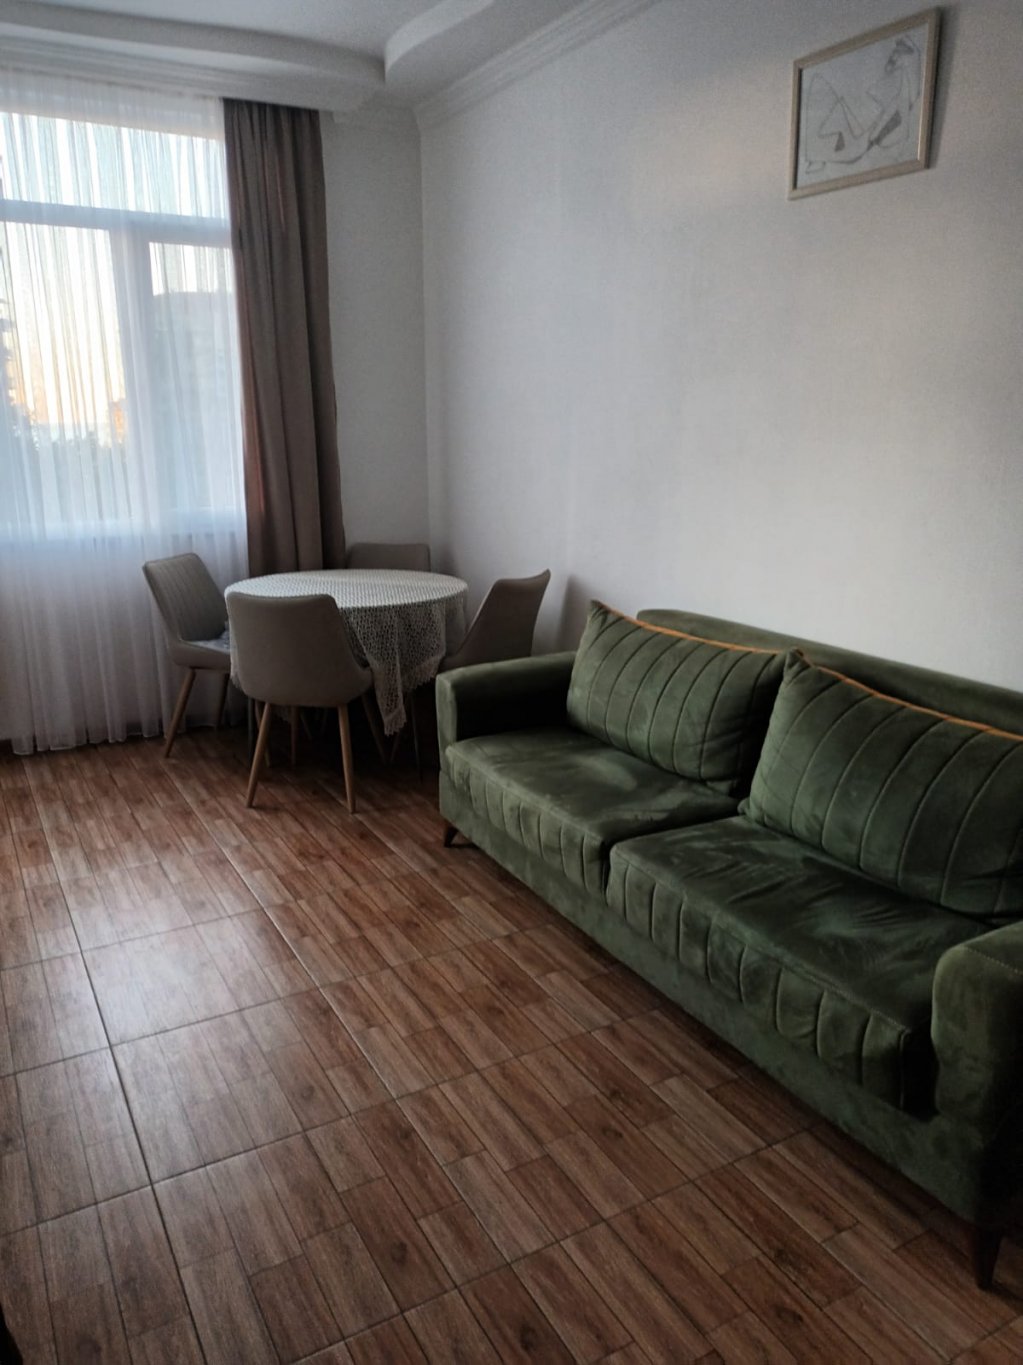 2-комнатная квартира на ул. В.Горгасали id-642 -  аренда квартиры в Батуми